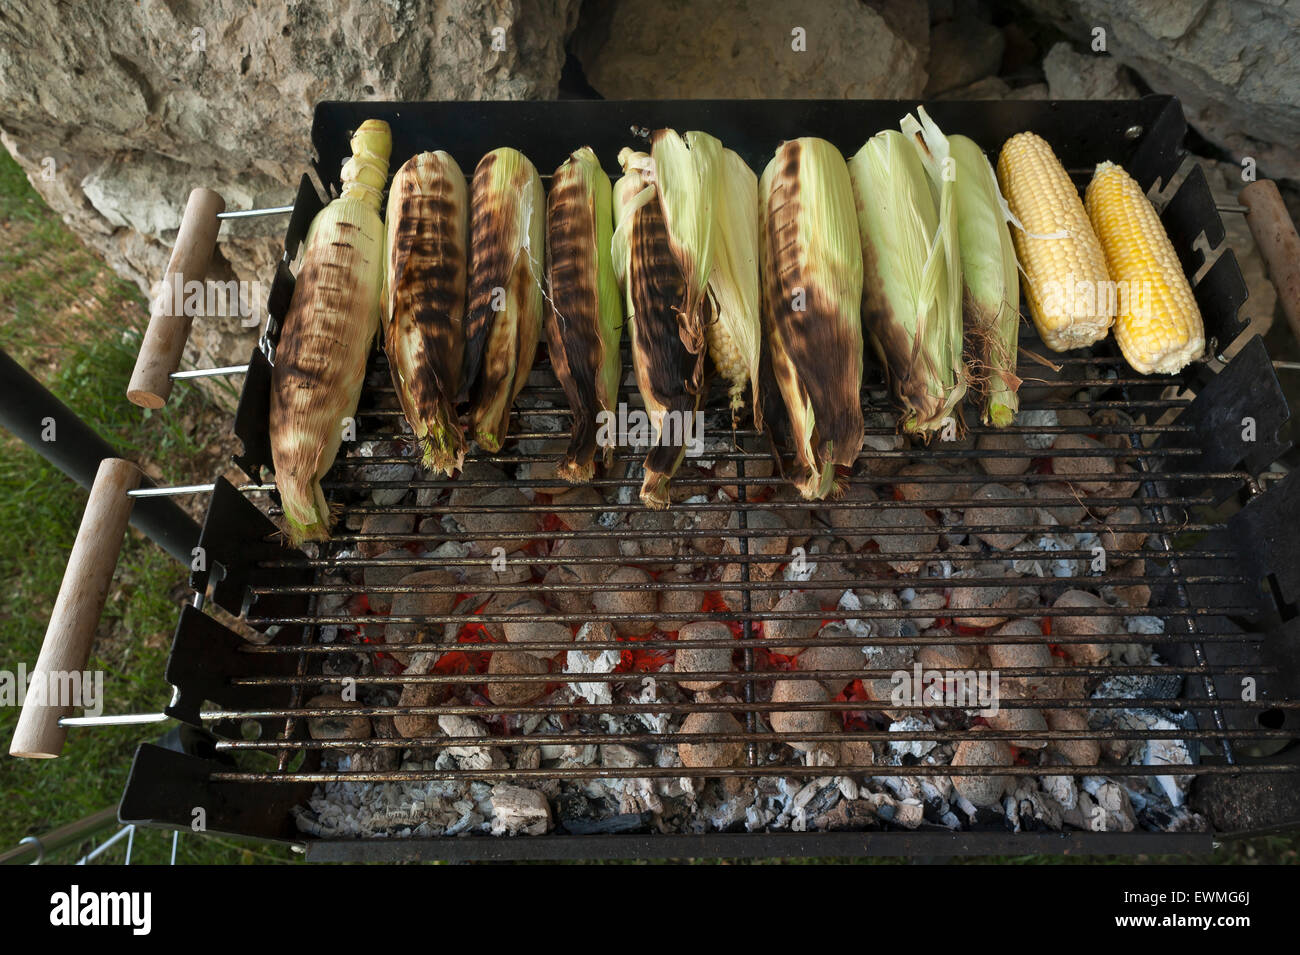 Des épis de maïs sur le barbecue, le charbon de bois incandescent à l'avant, Allemagne Banque D'Images